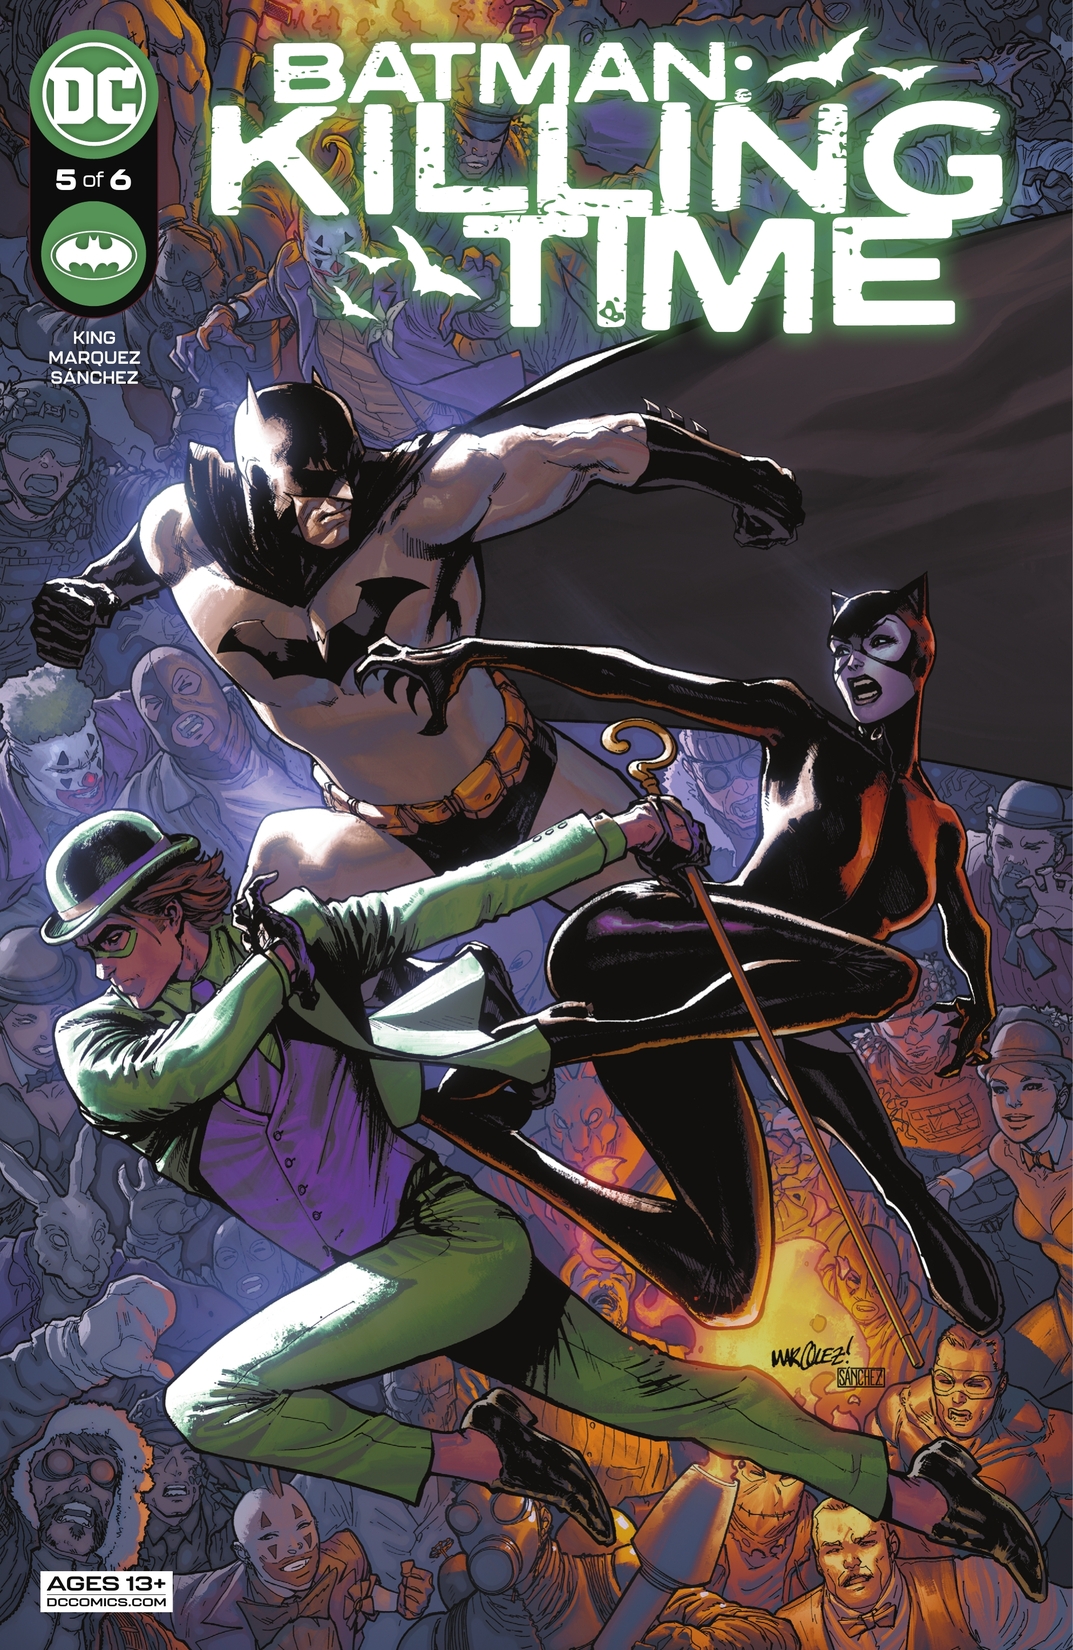 Batman: Killing Time #5 preview images